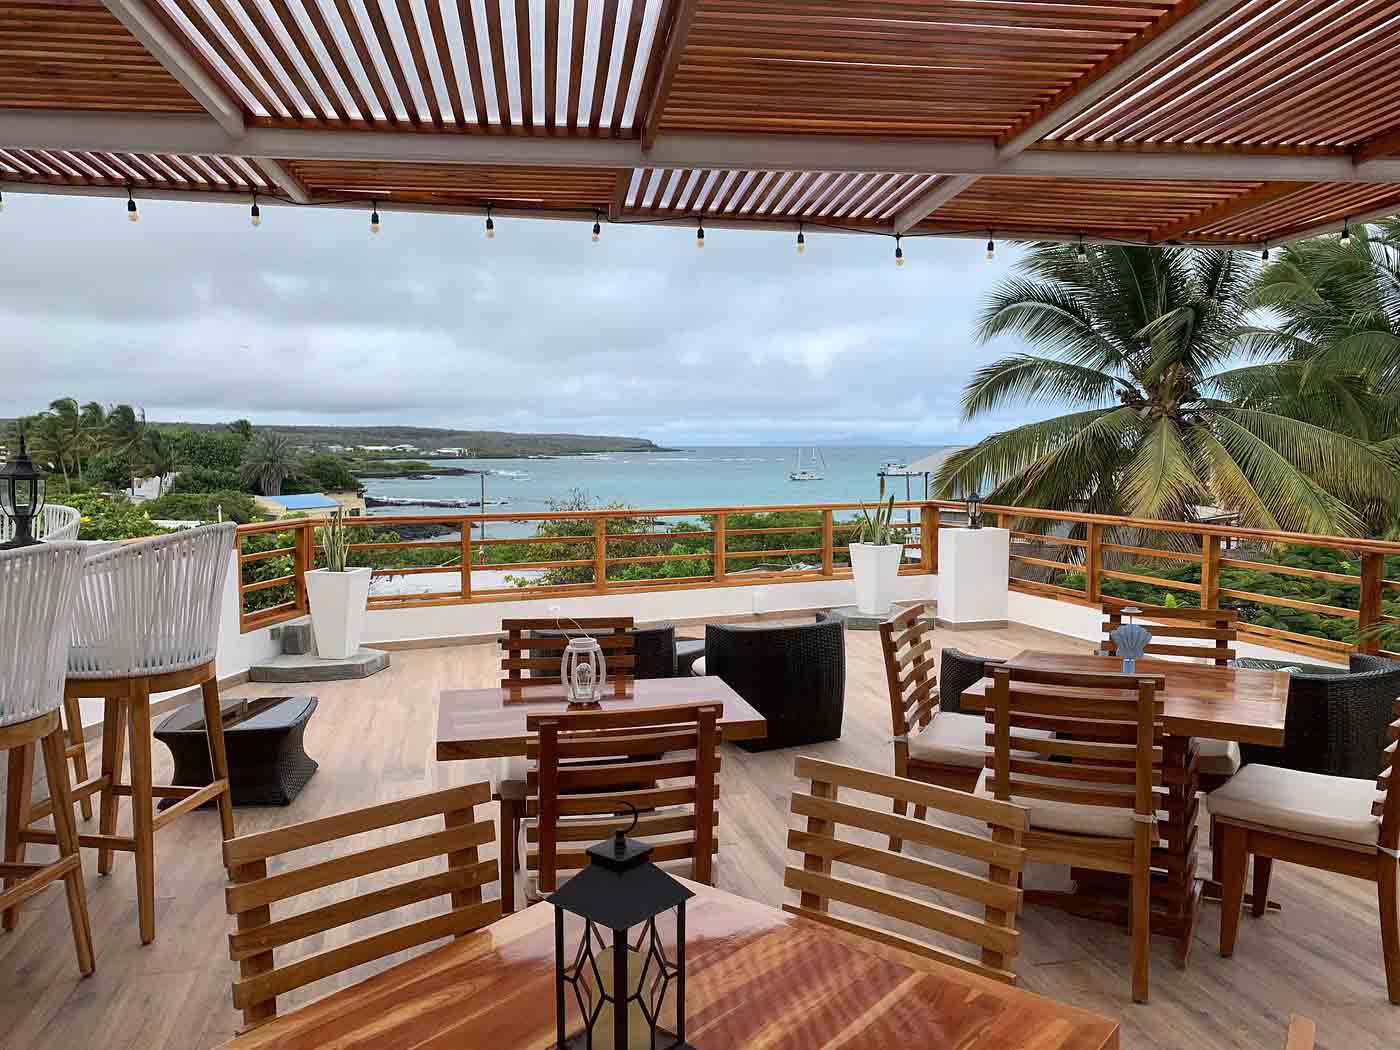 Hotel La Isla in Santa Cruz, Galapagos